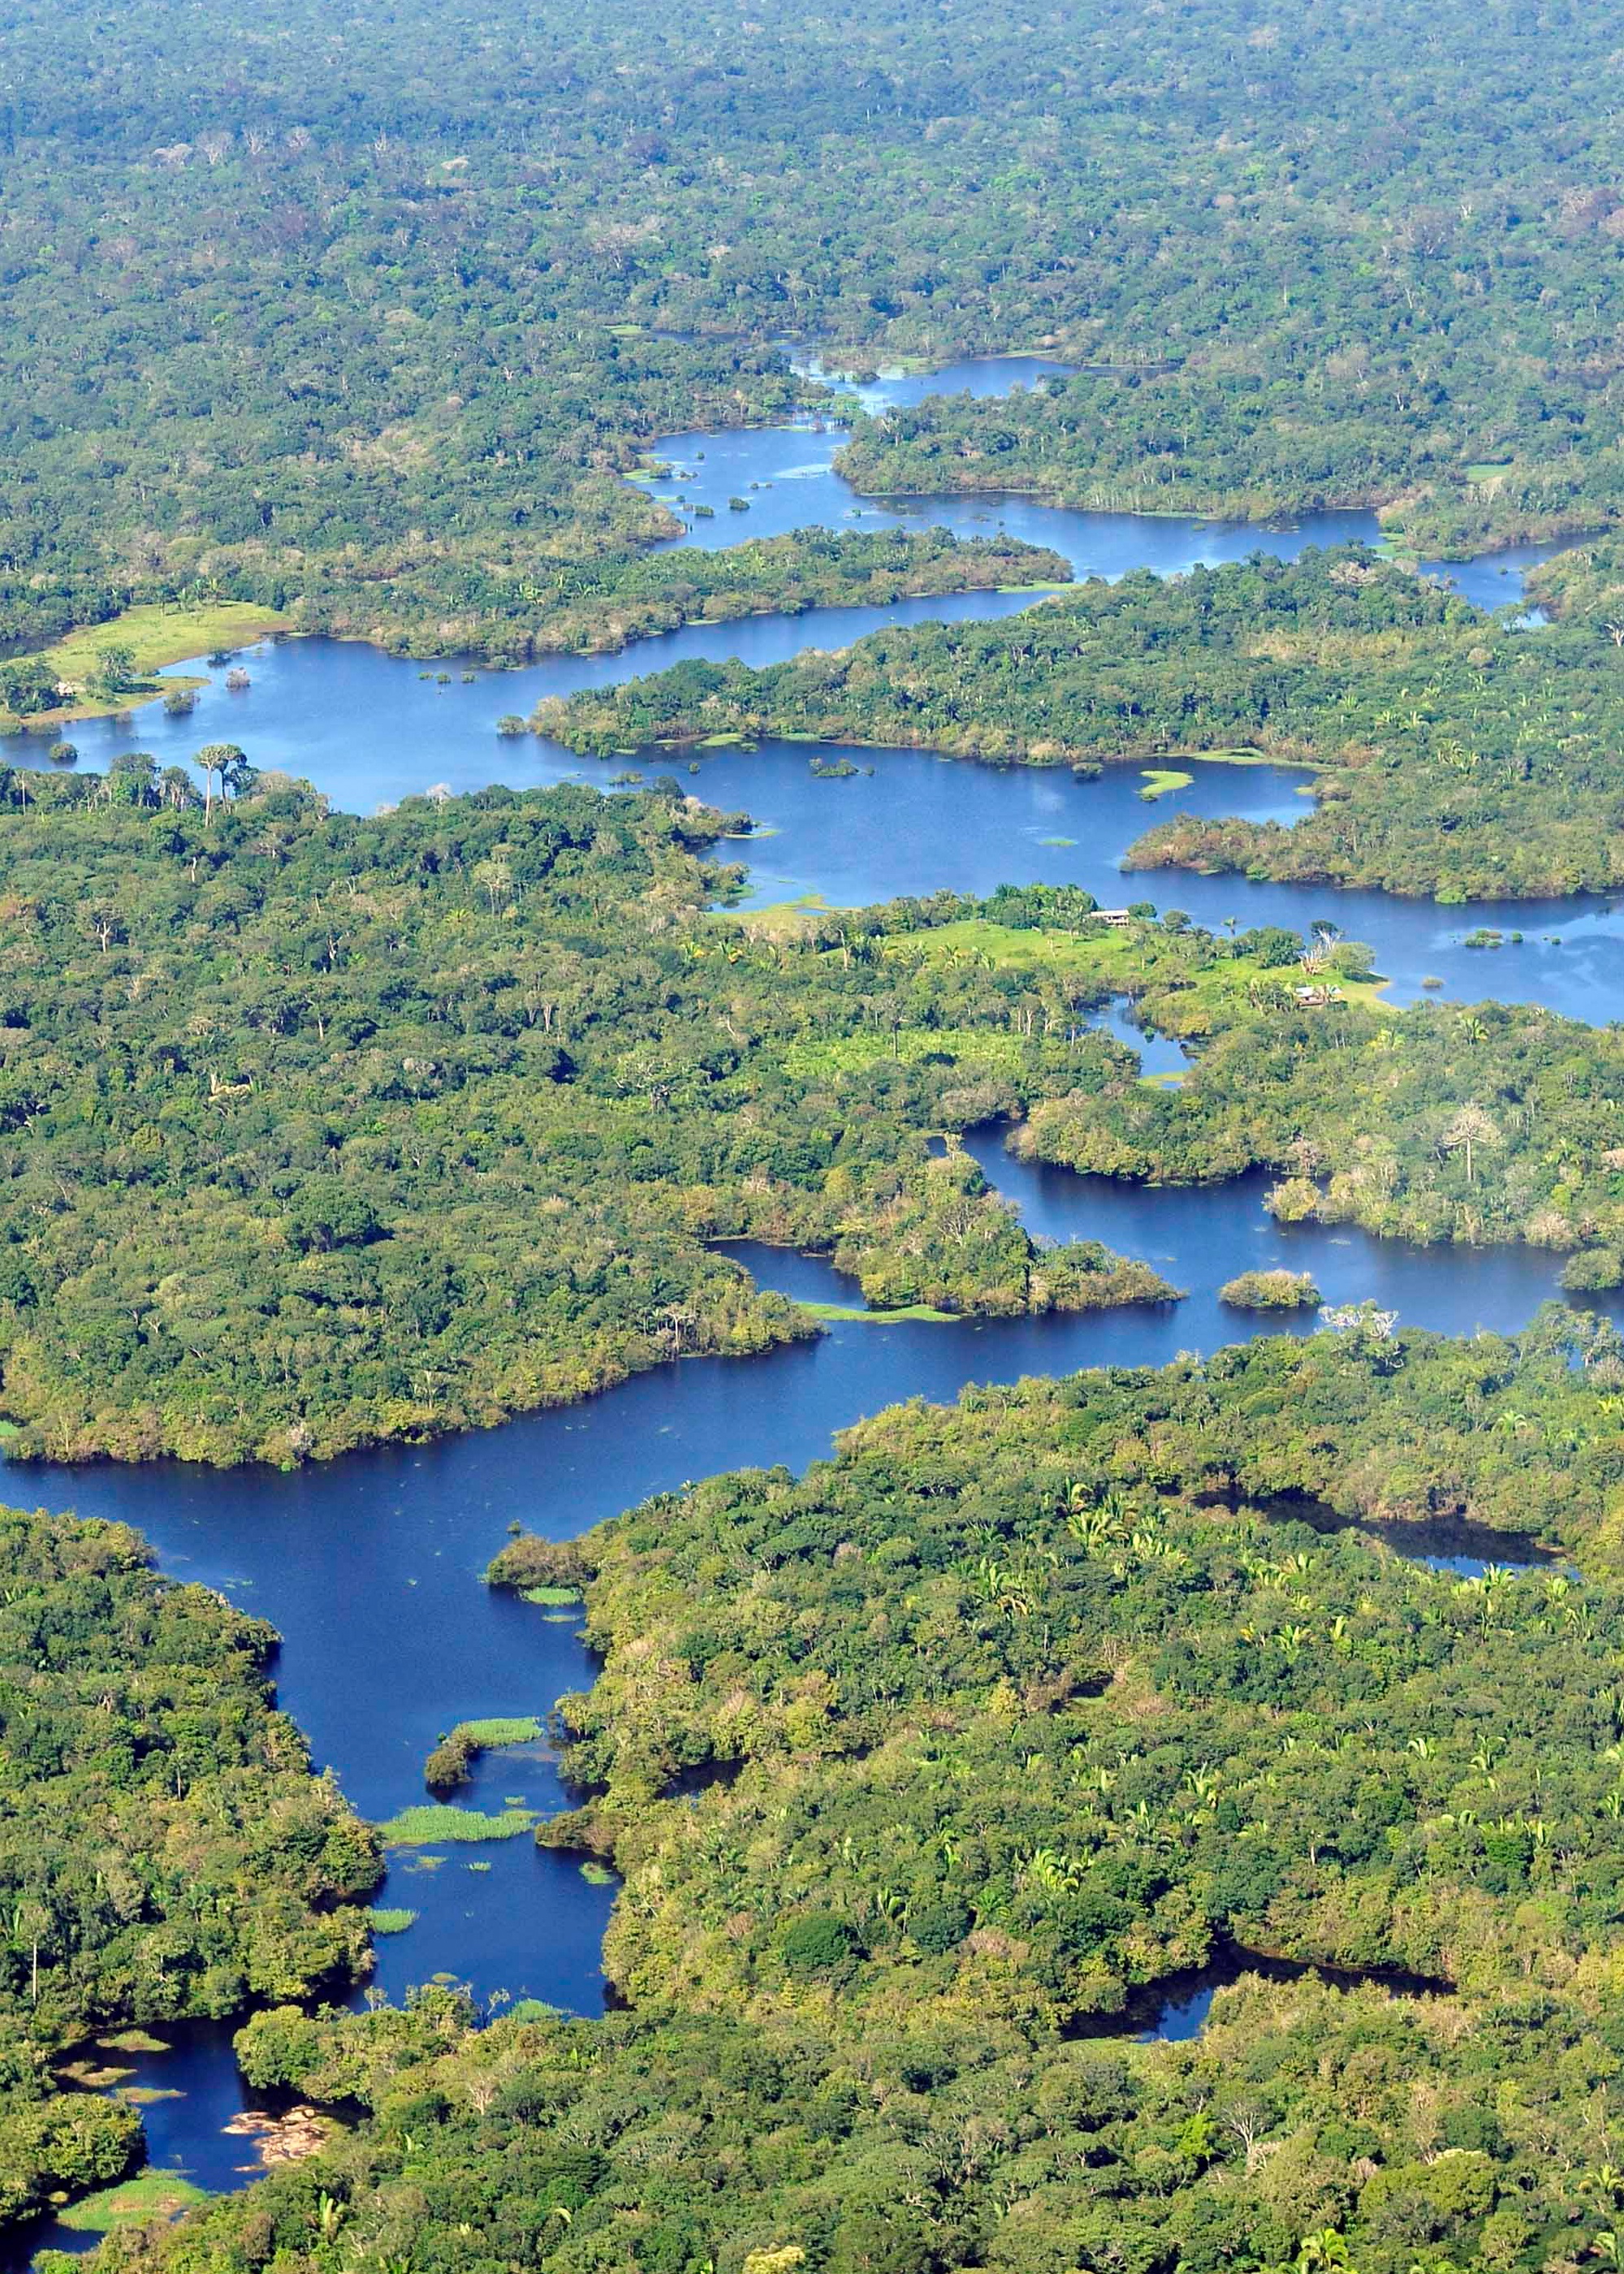 巴西亚马孙河热带雨林大火,对世界气候有影响吗?